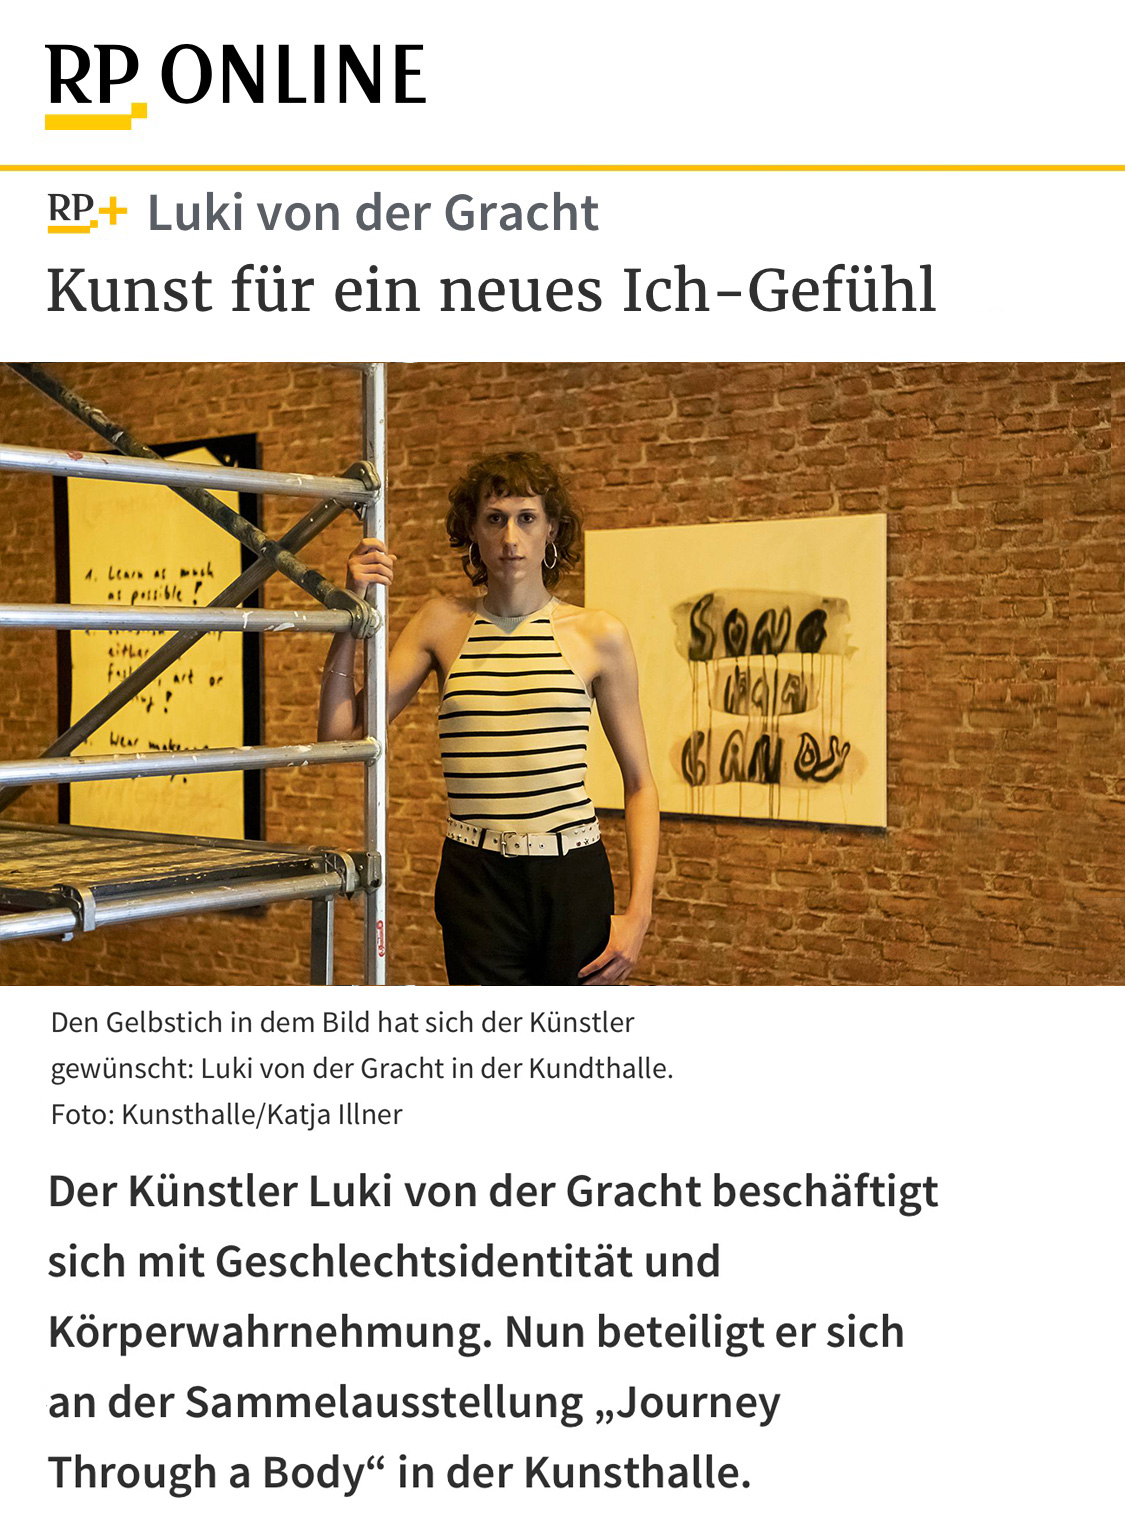 Luki von der Gracht Journey Through A Body – Kunsthalle Düsseldorf